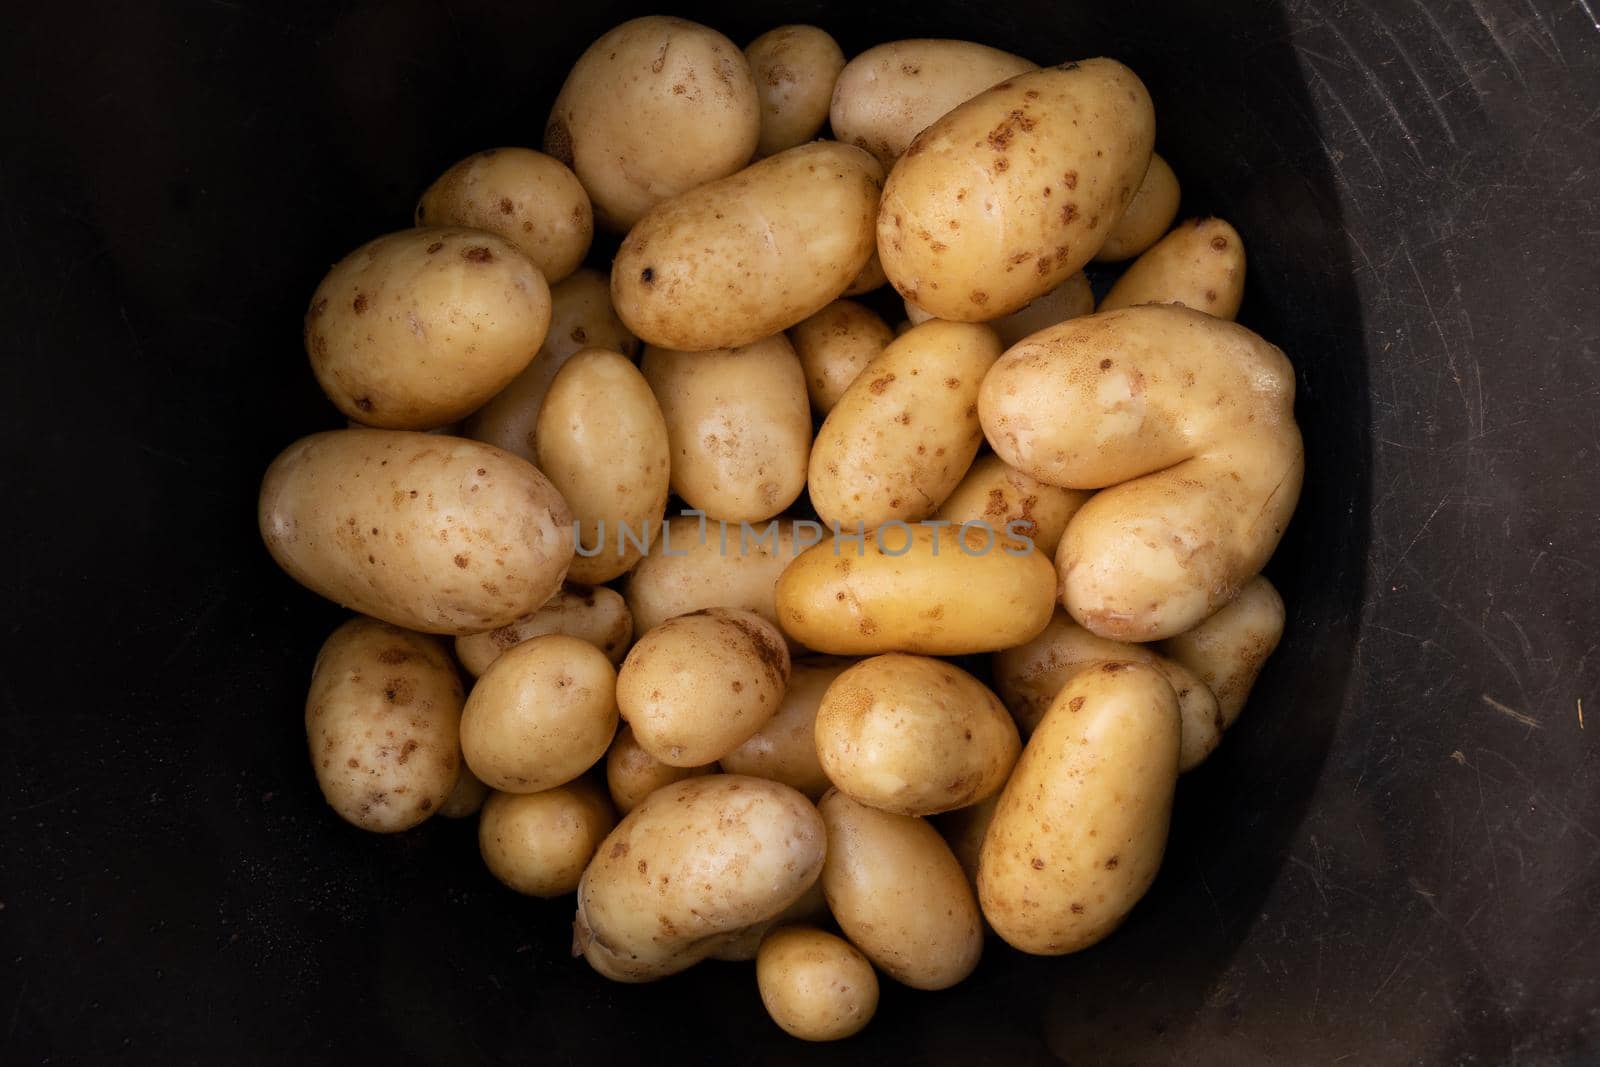 Potatoes in a black bucket by Tilo